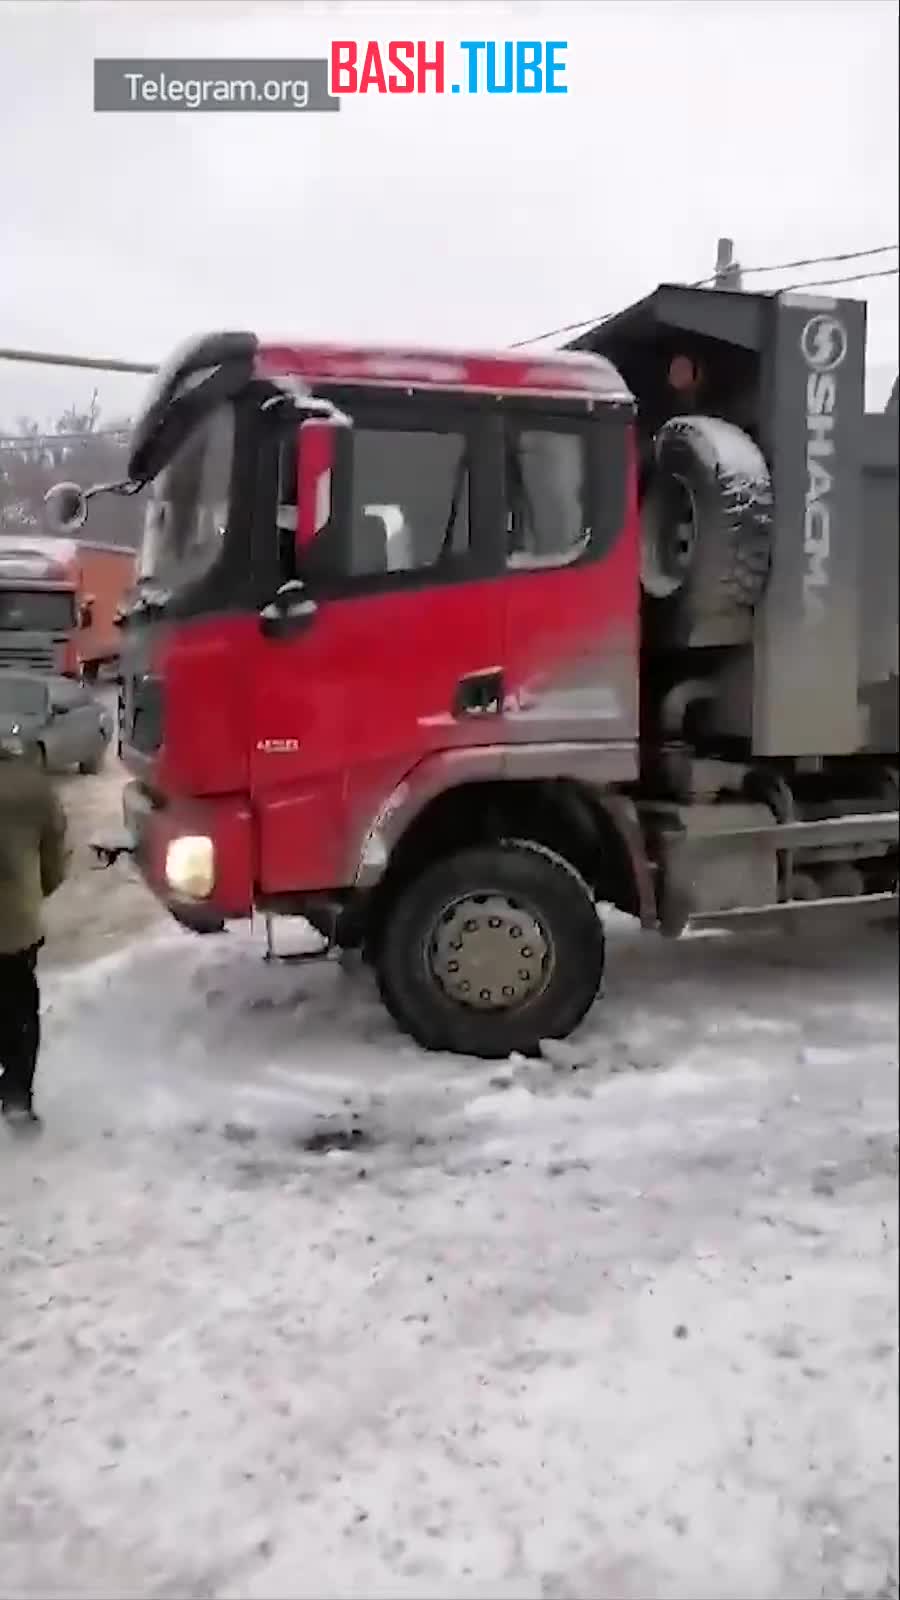  15 машин столкнулись в Новосибирске после обильного снегопада